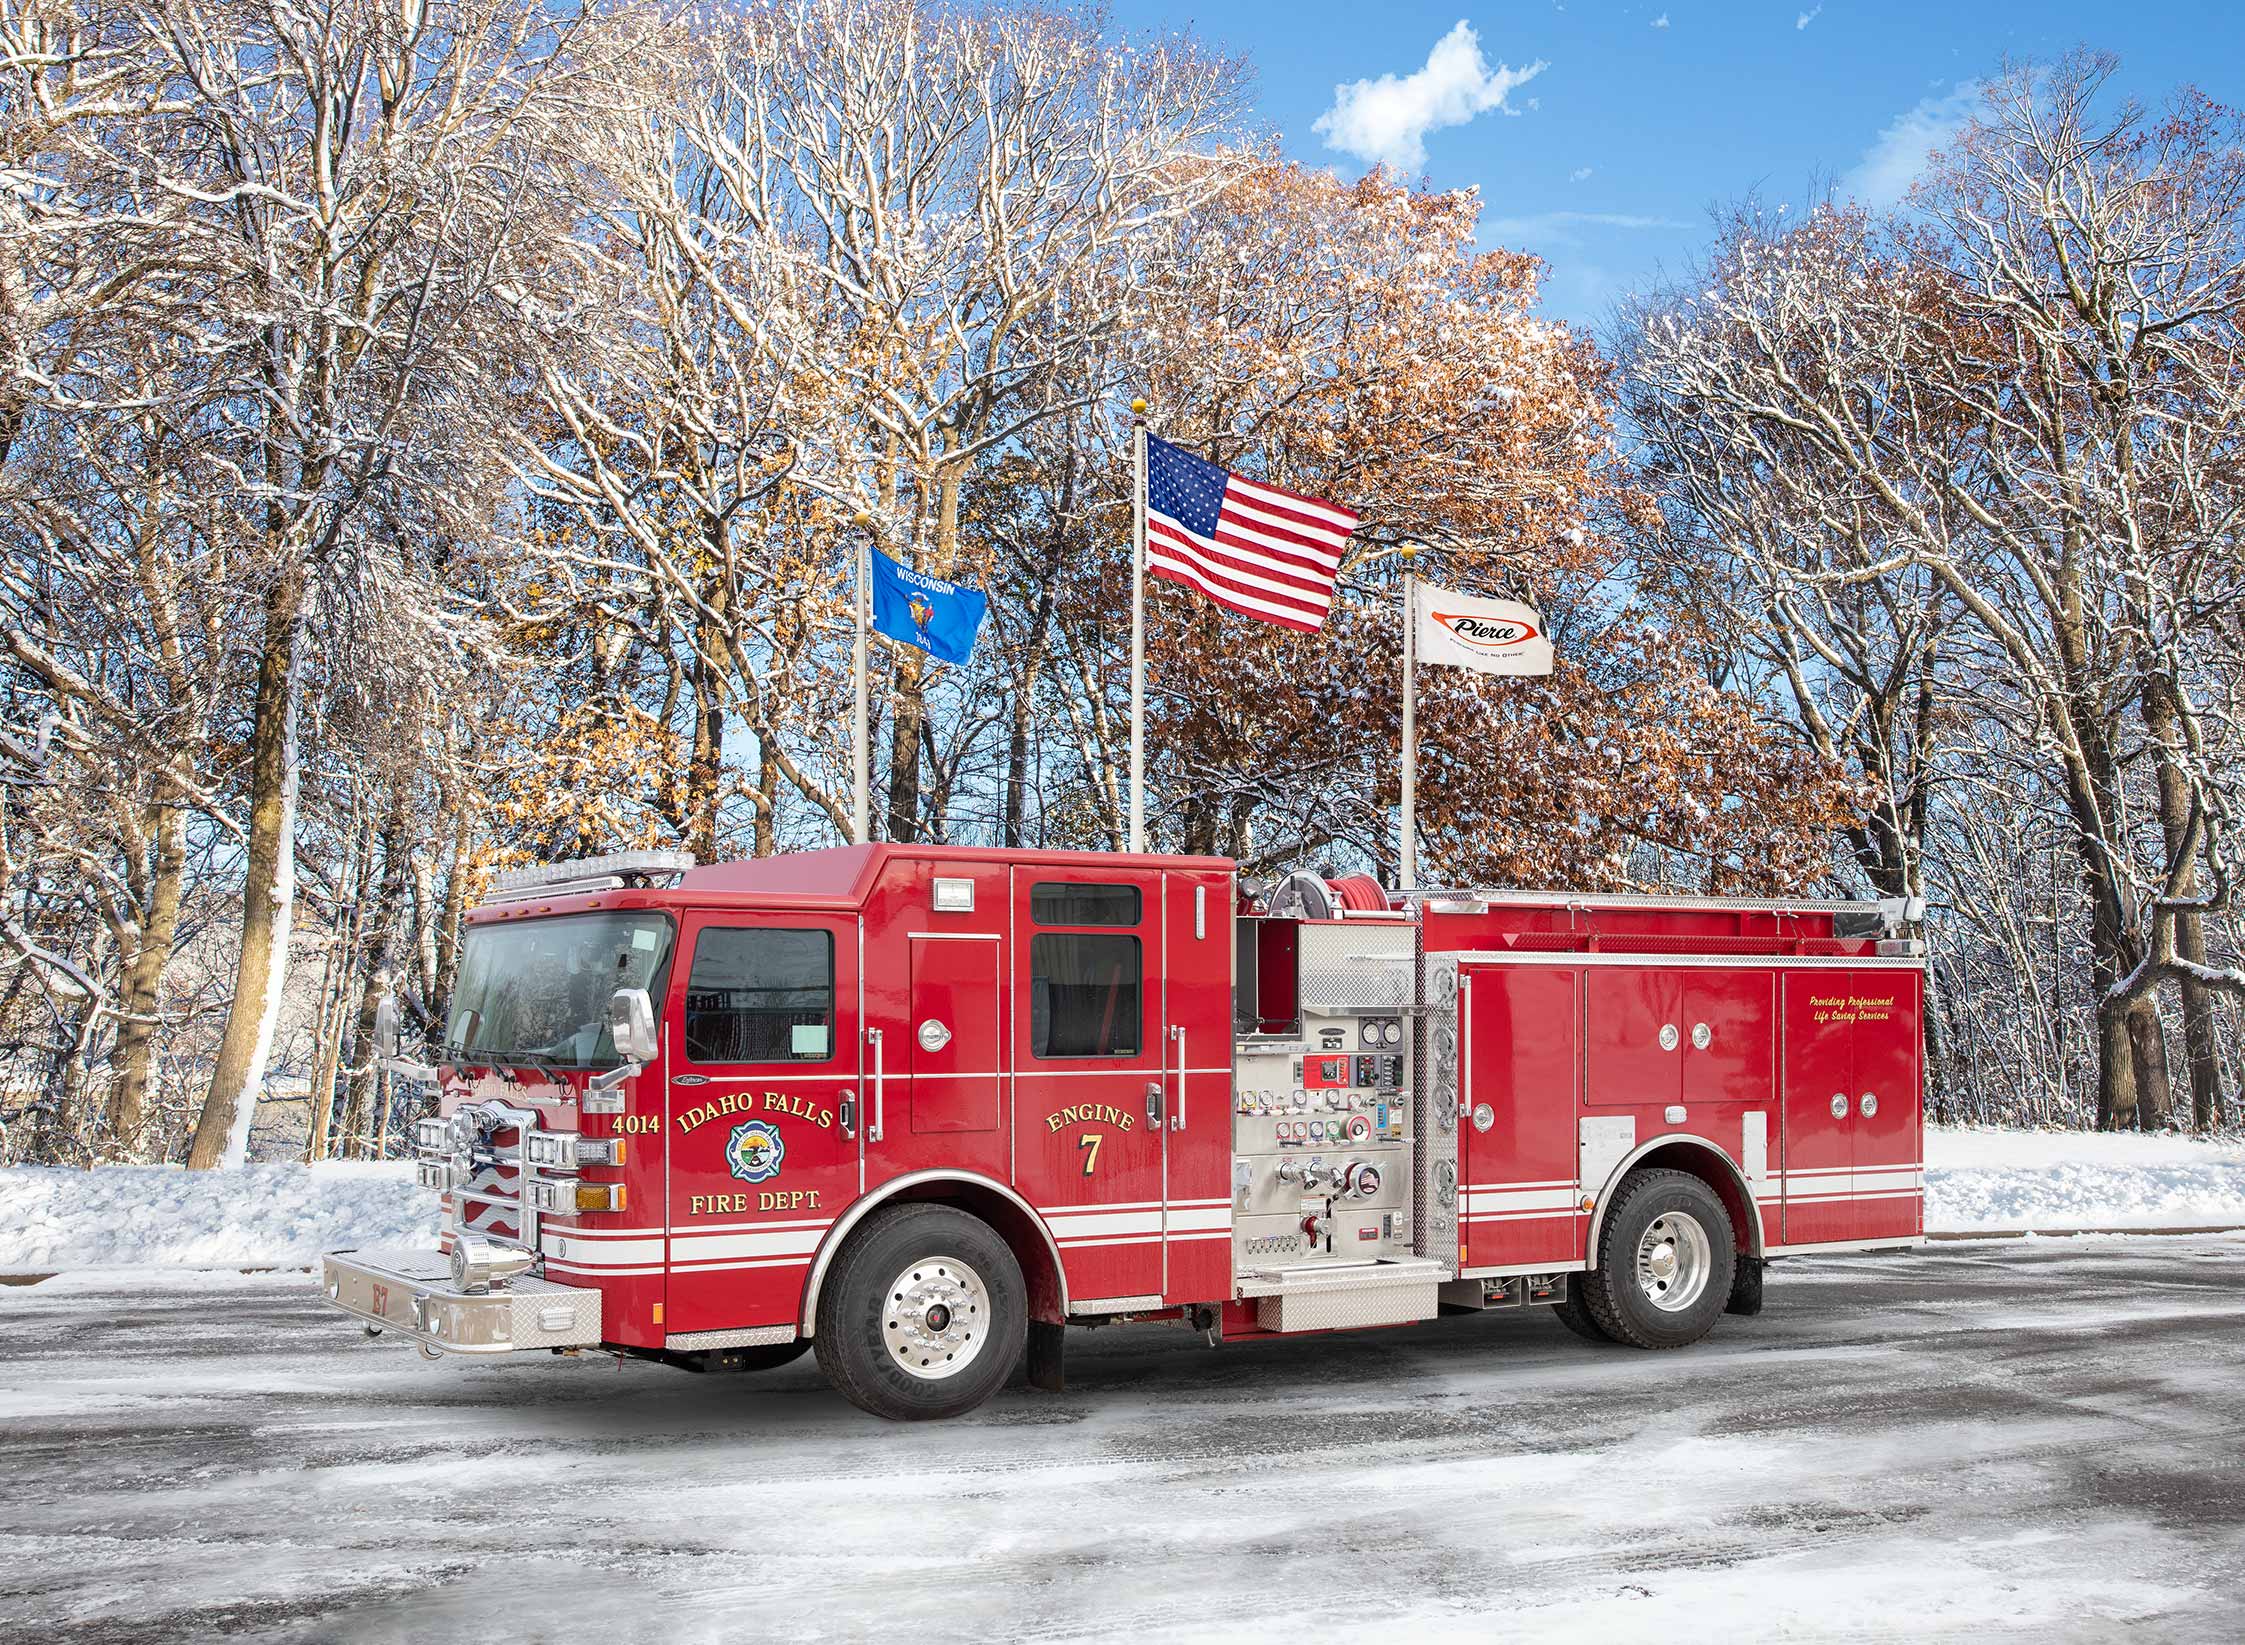 Idaho Falls Fire Department - Pumper